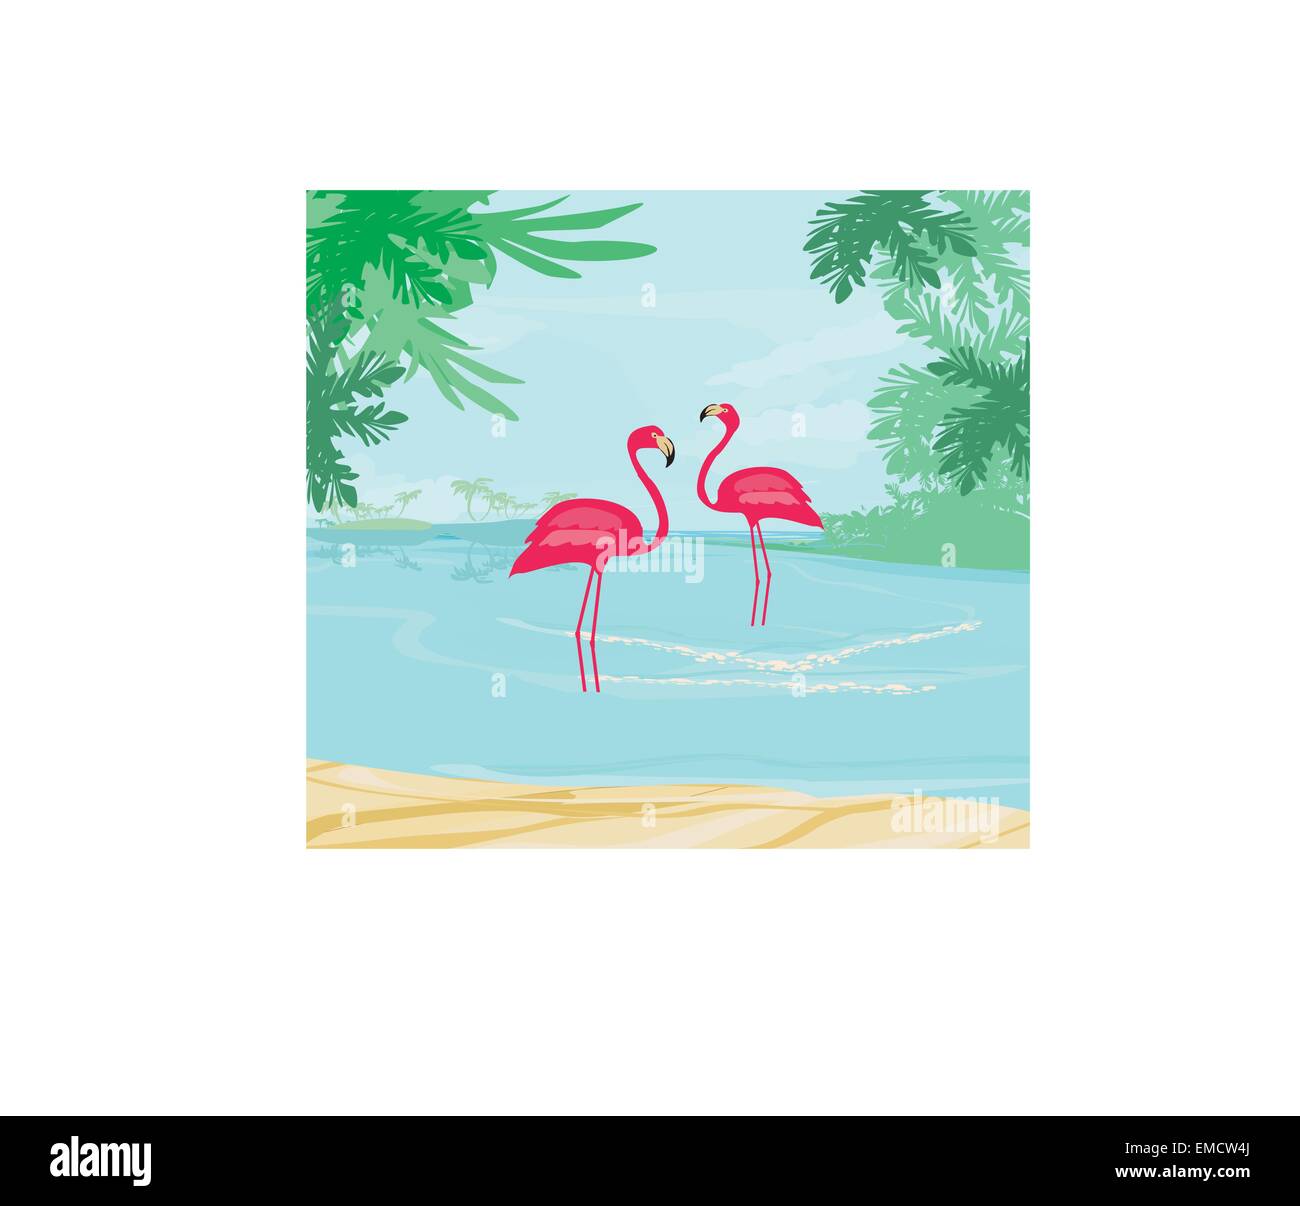 Illustration avec green palms et flamant rose Illustration de Vecteur